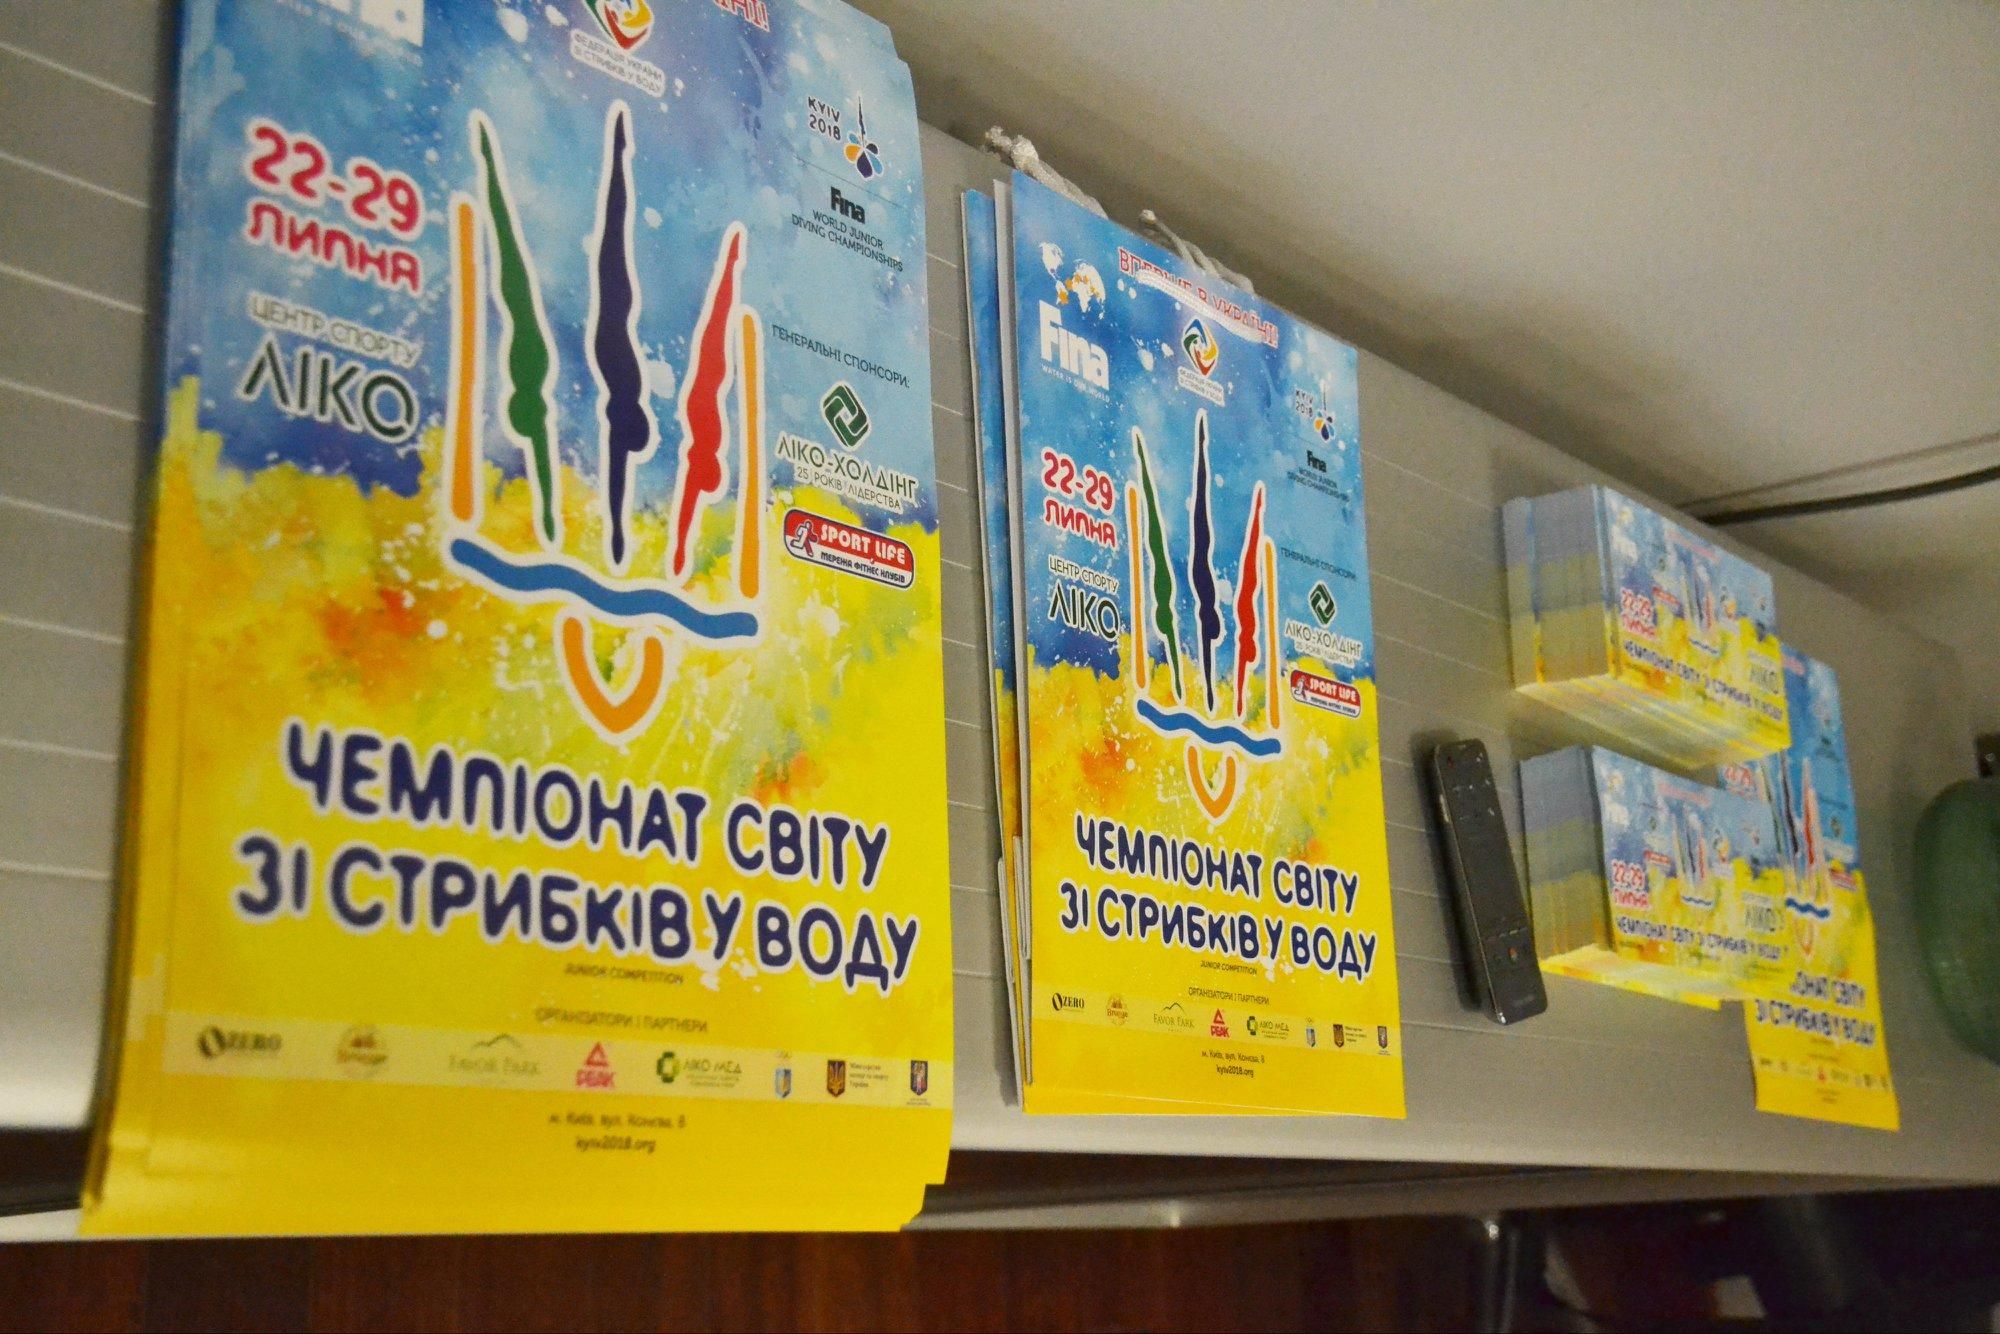 Украина примет Чемпионат мира по прыжкам в воду среди юниоров